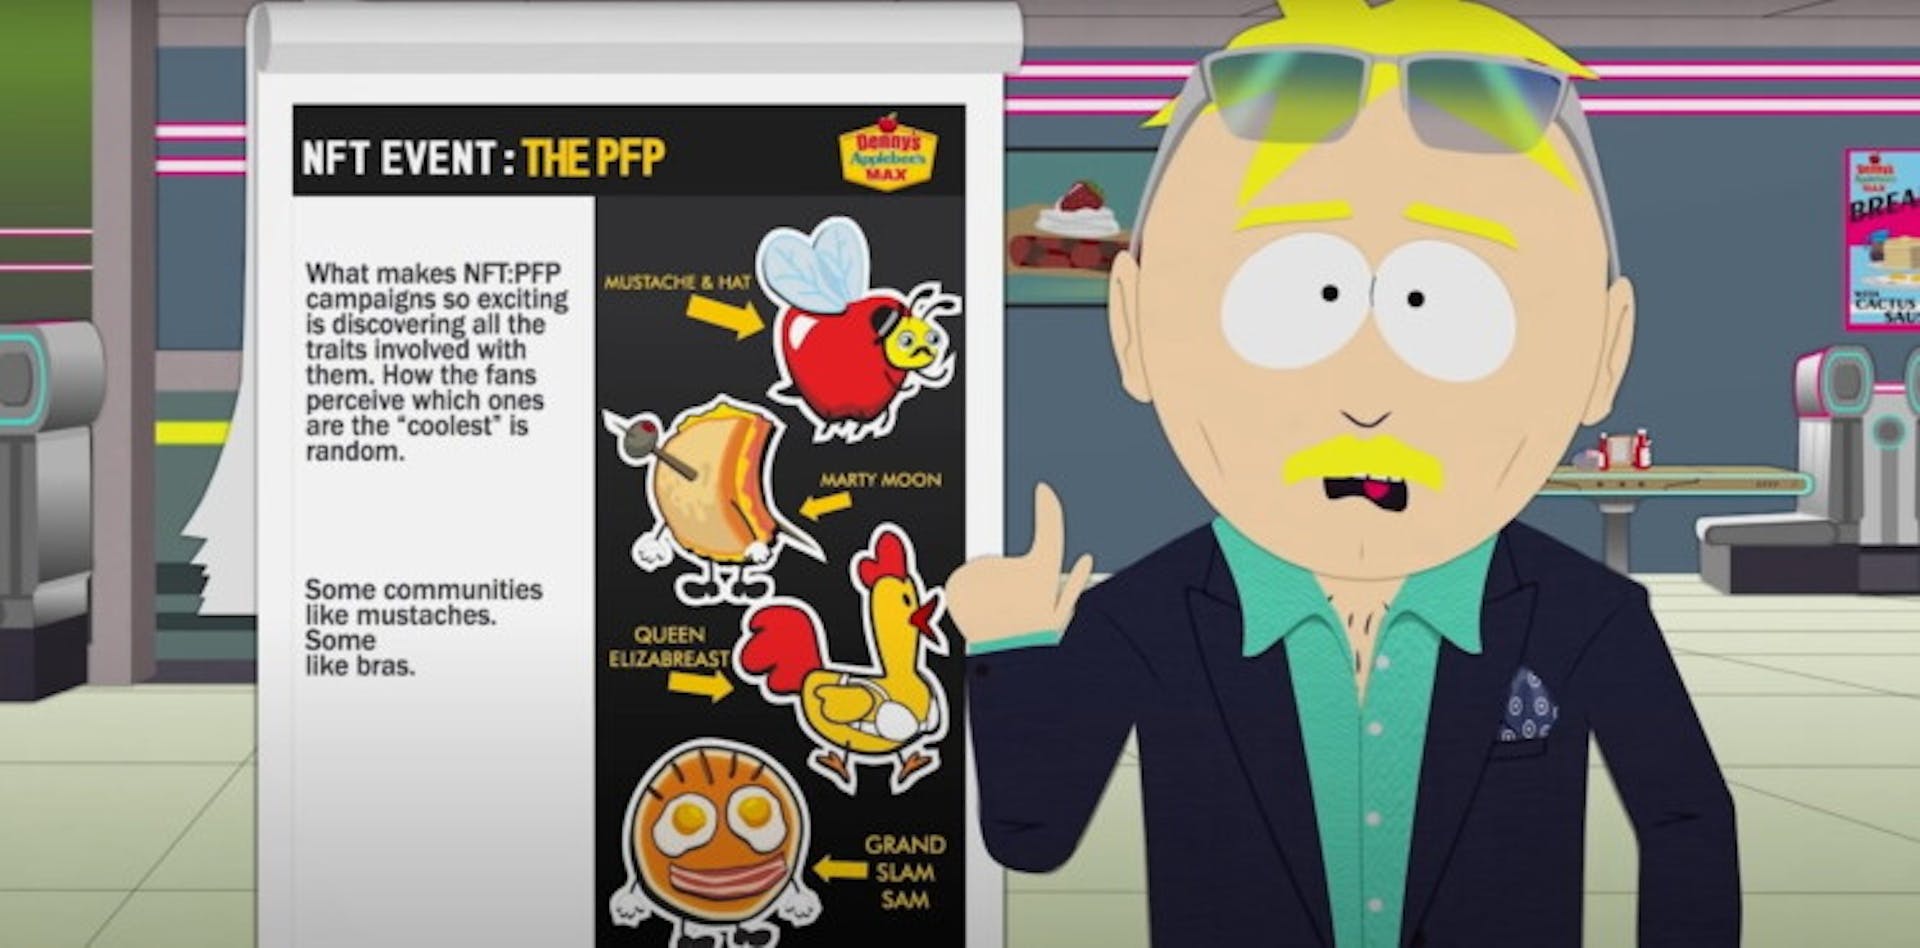 Leopold "Butters" Stotch thuyết phục một chuỗi cửa hàng thức ăn nhanh phát hành NFT. Một cảnh trong tập đặc biệt của "South Park"